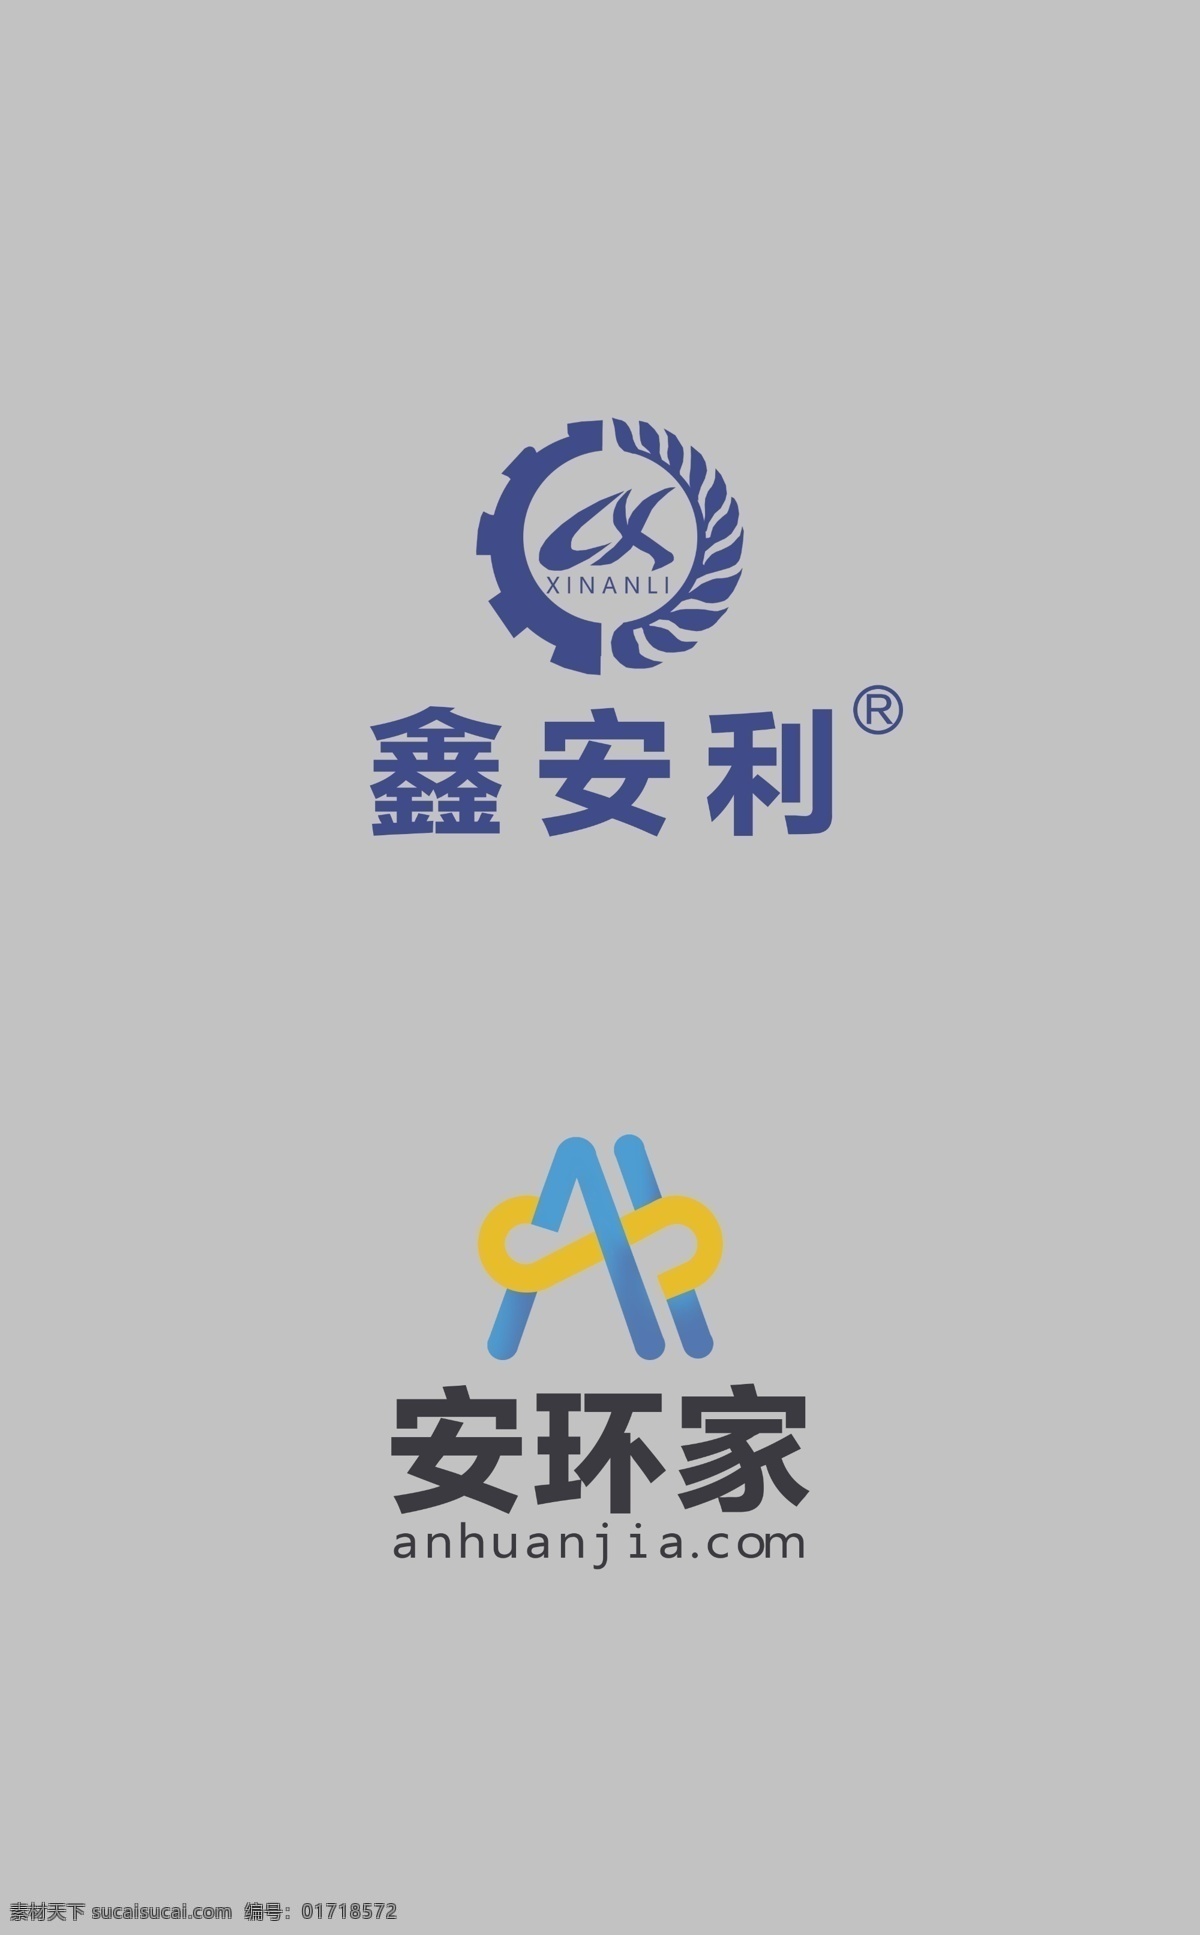 鑫安利 安环家 logo 背景